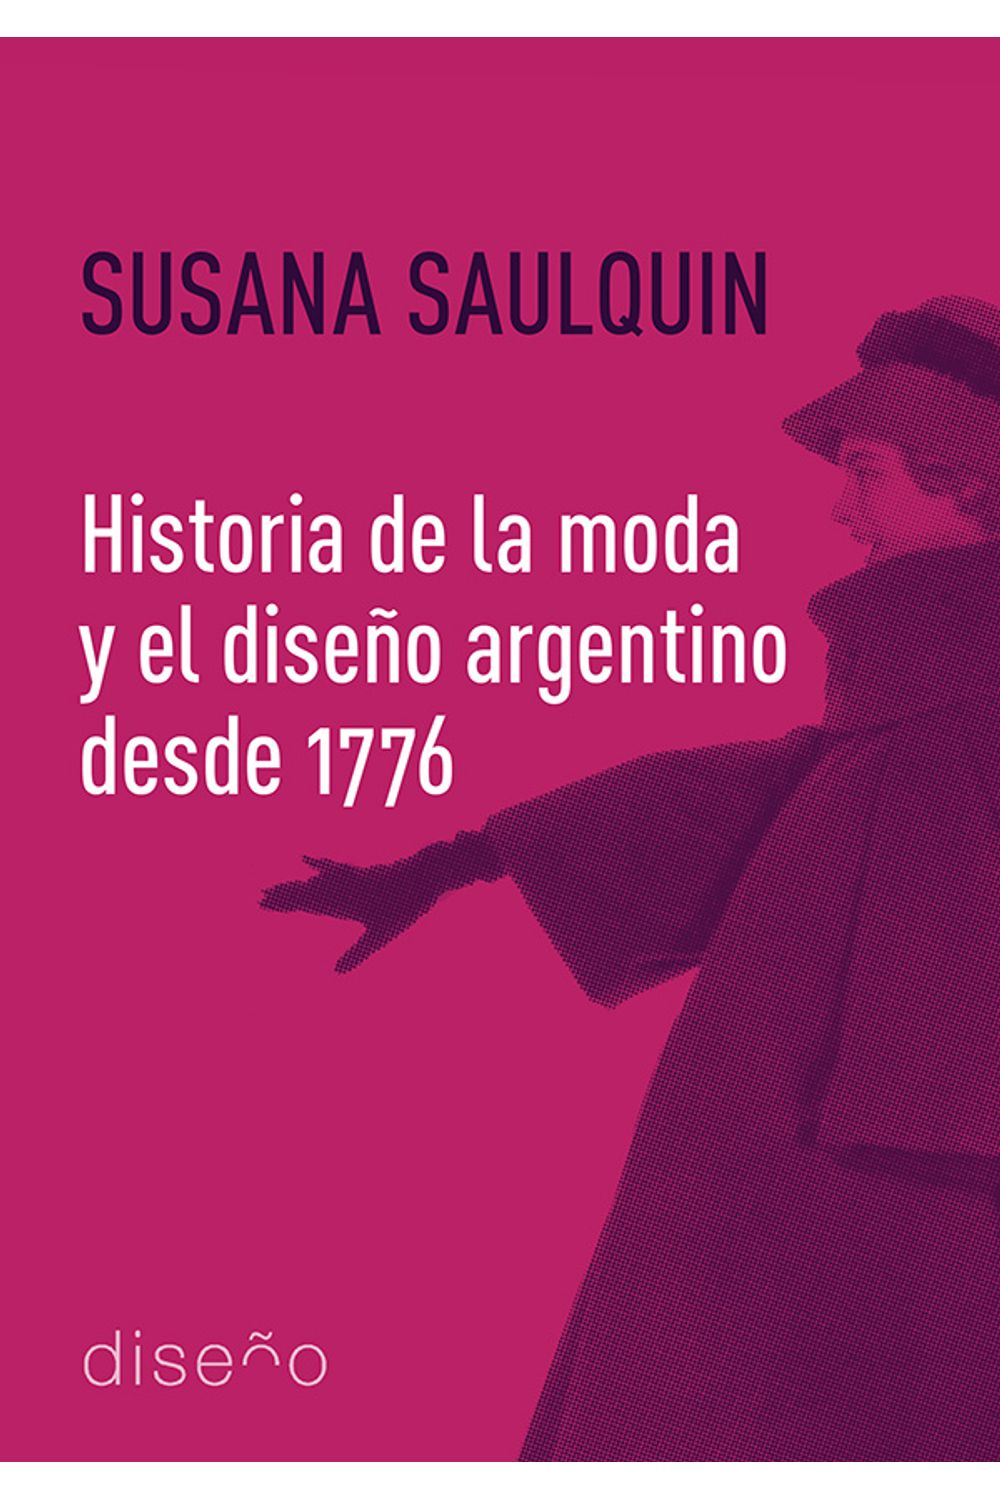 bm-historia-de-la-moda-y-el-diseno-argentino-desde-1776-nobukodiseno-editorial-9781643602462